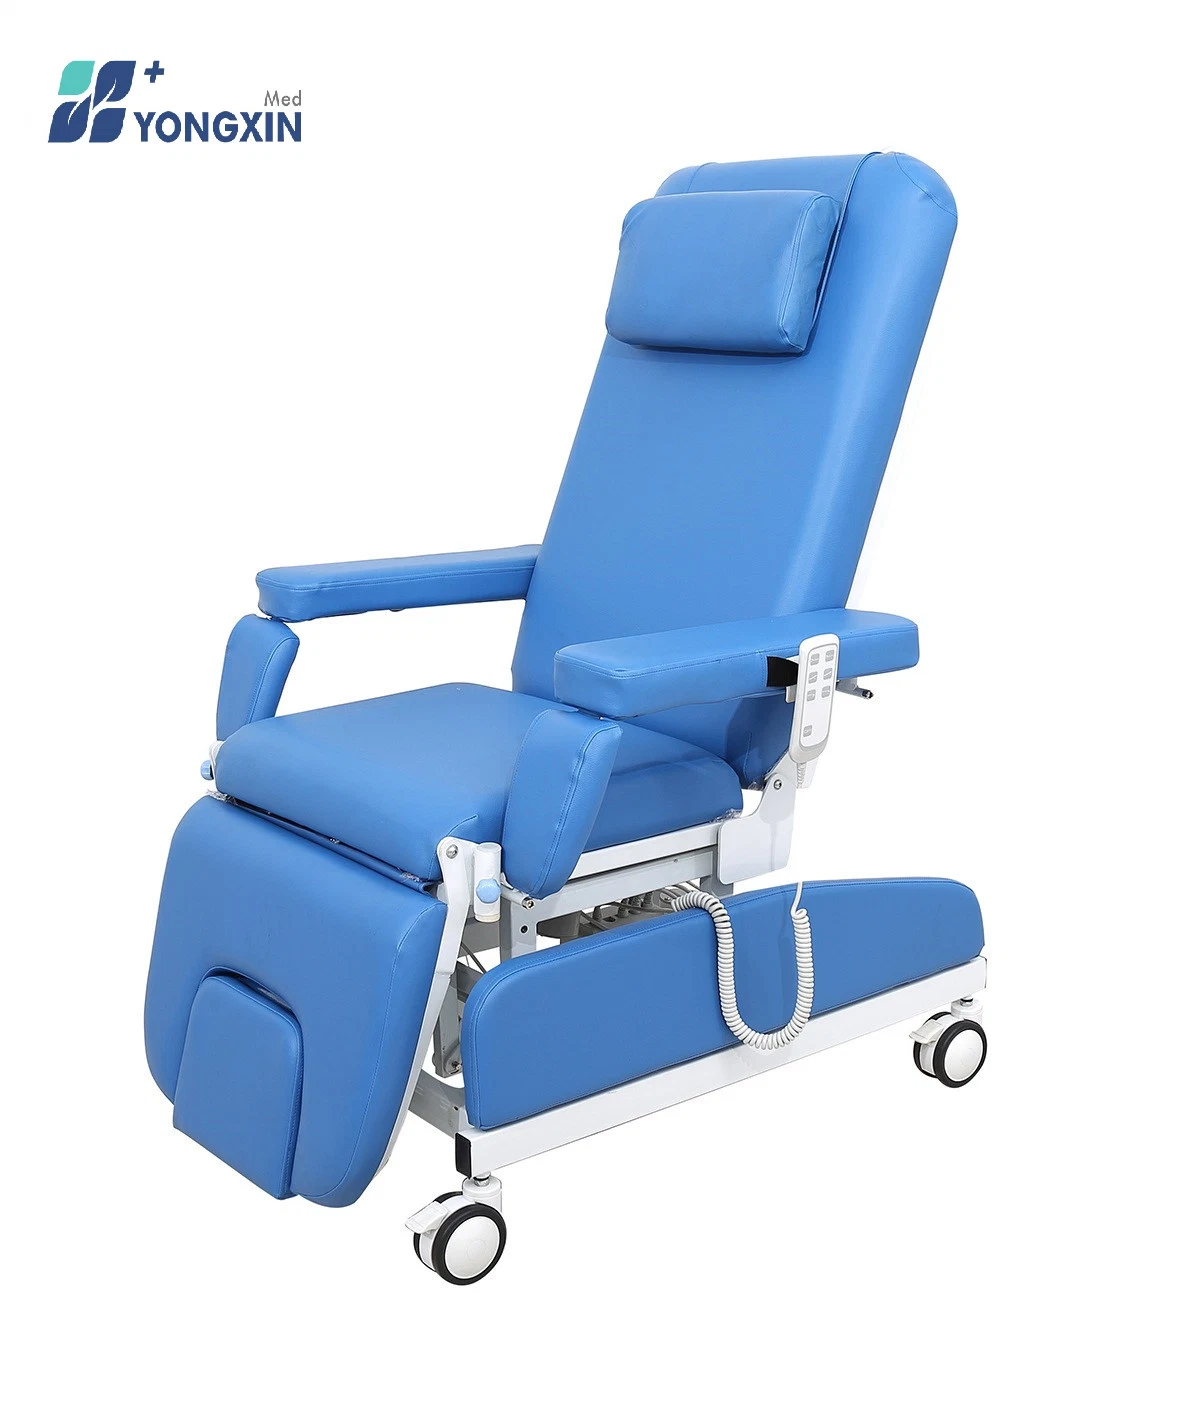 Yxz-0938 Eléctrico de lujo en silla de Donación de sangre, sala de Diálisis del Hospital se utiliza una silla, silla eléctrica y manual de la infusión,